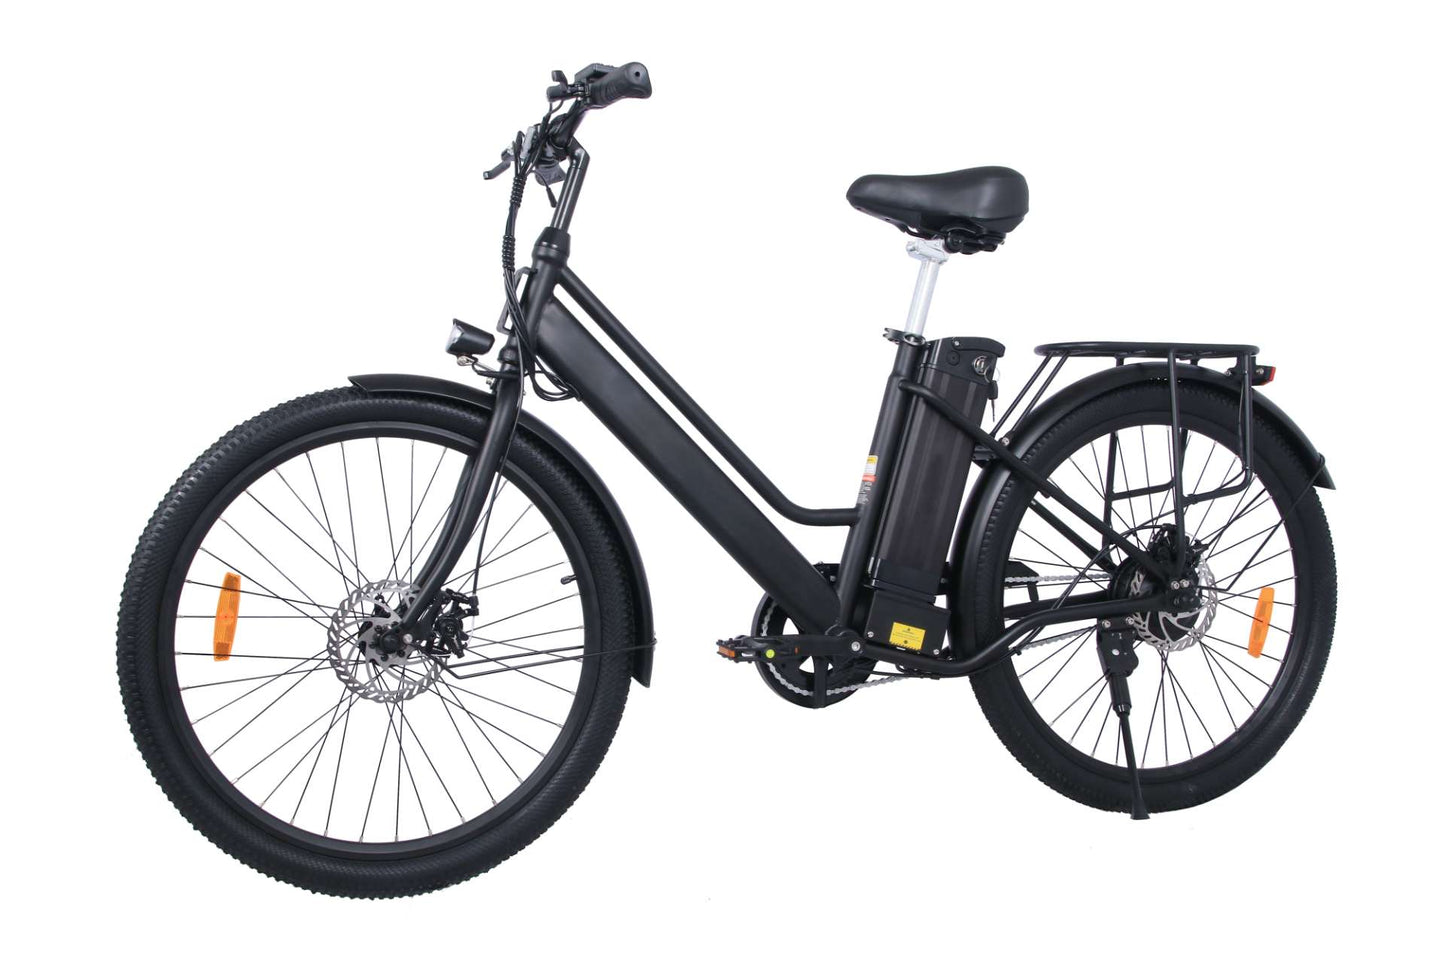 ONESPORT Nieuwe OT18 350W elektrische fiets